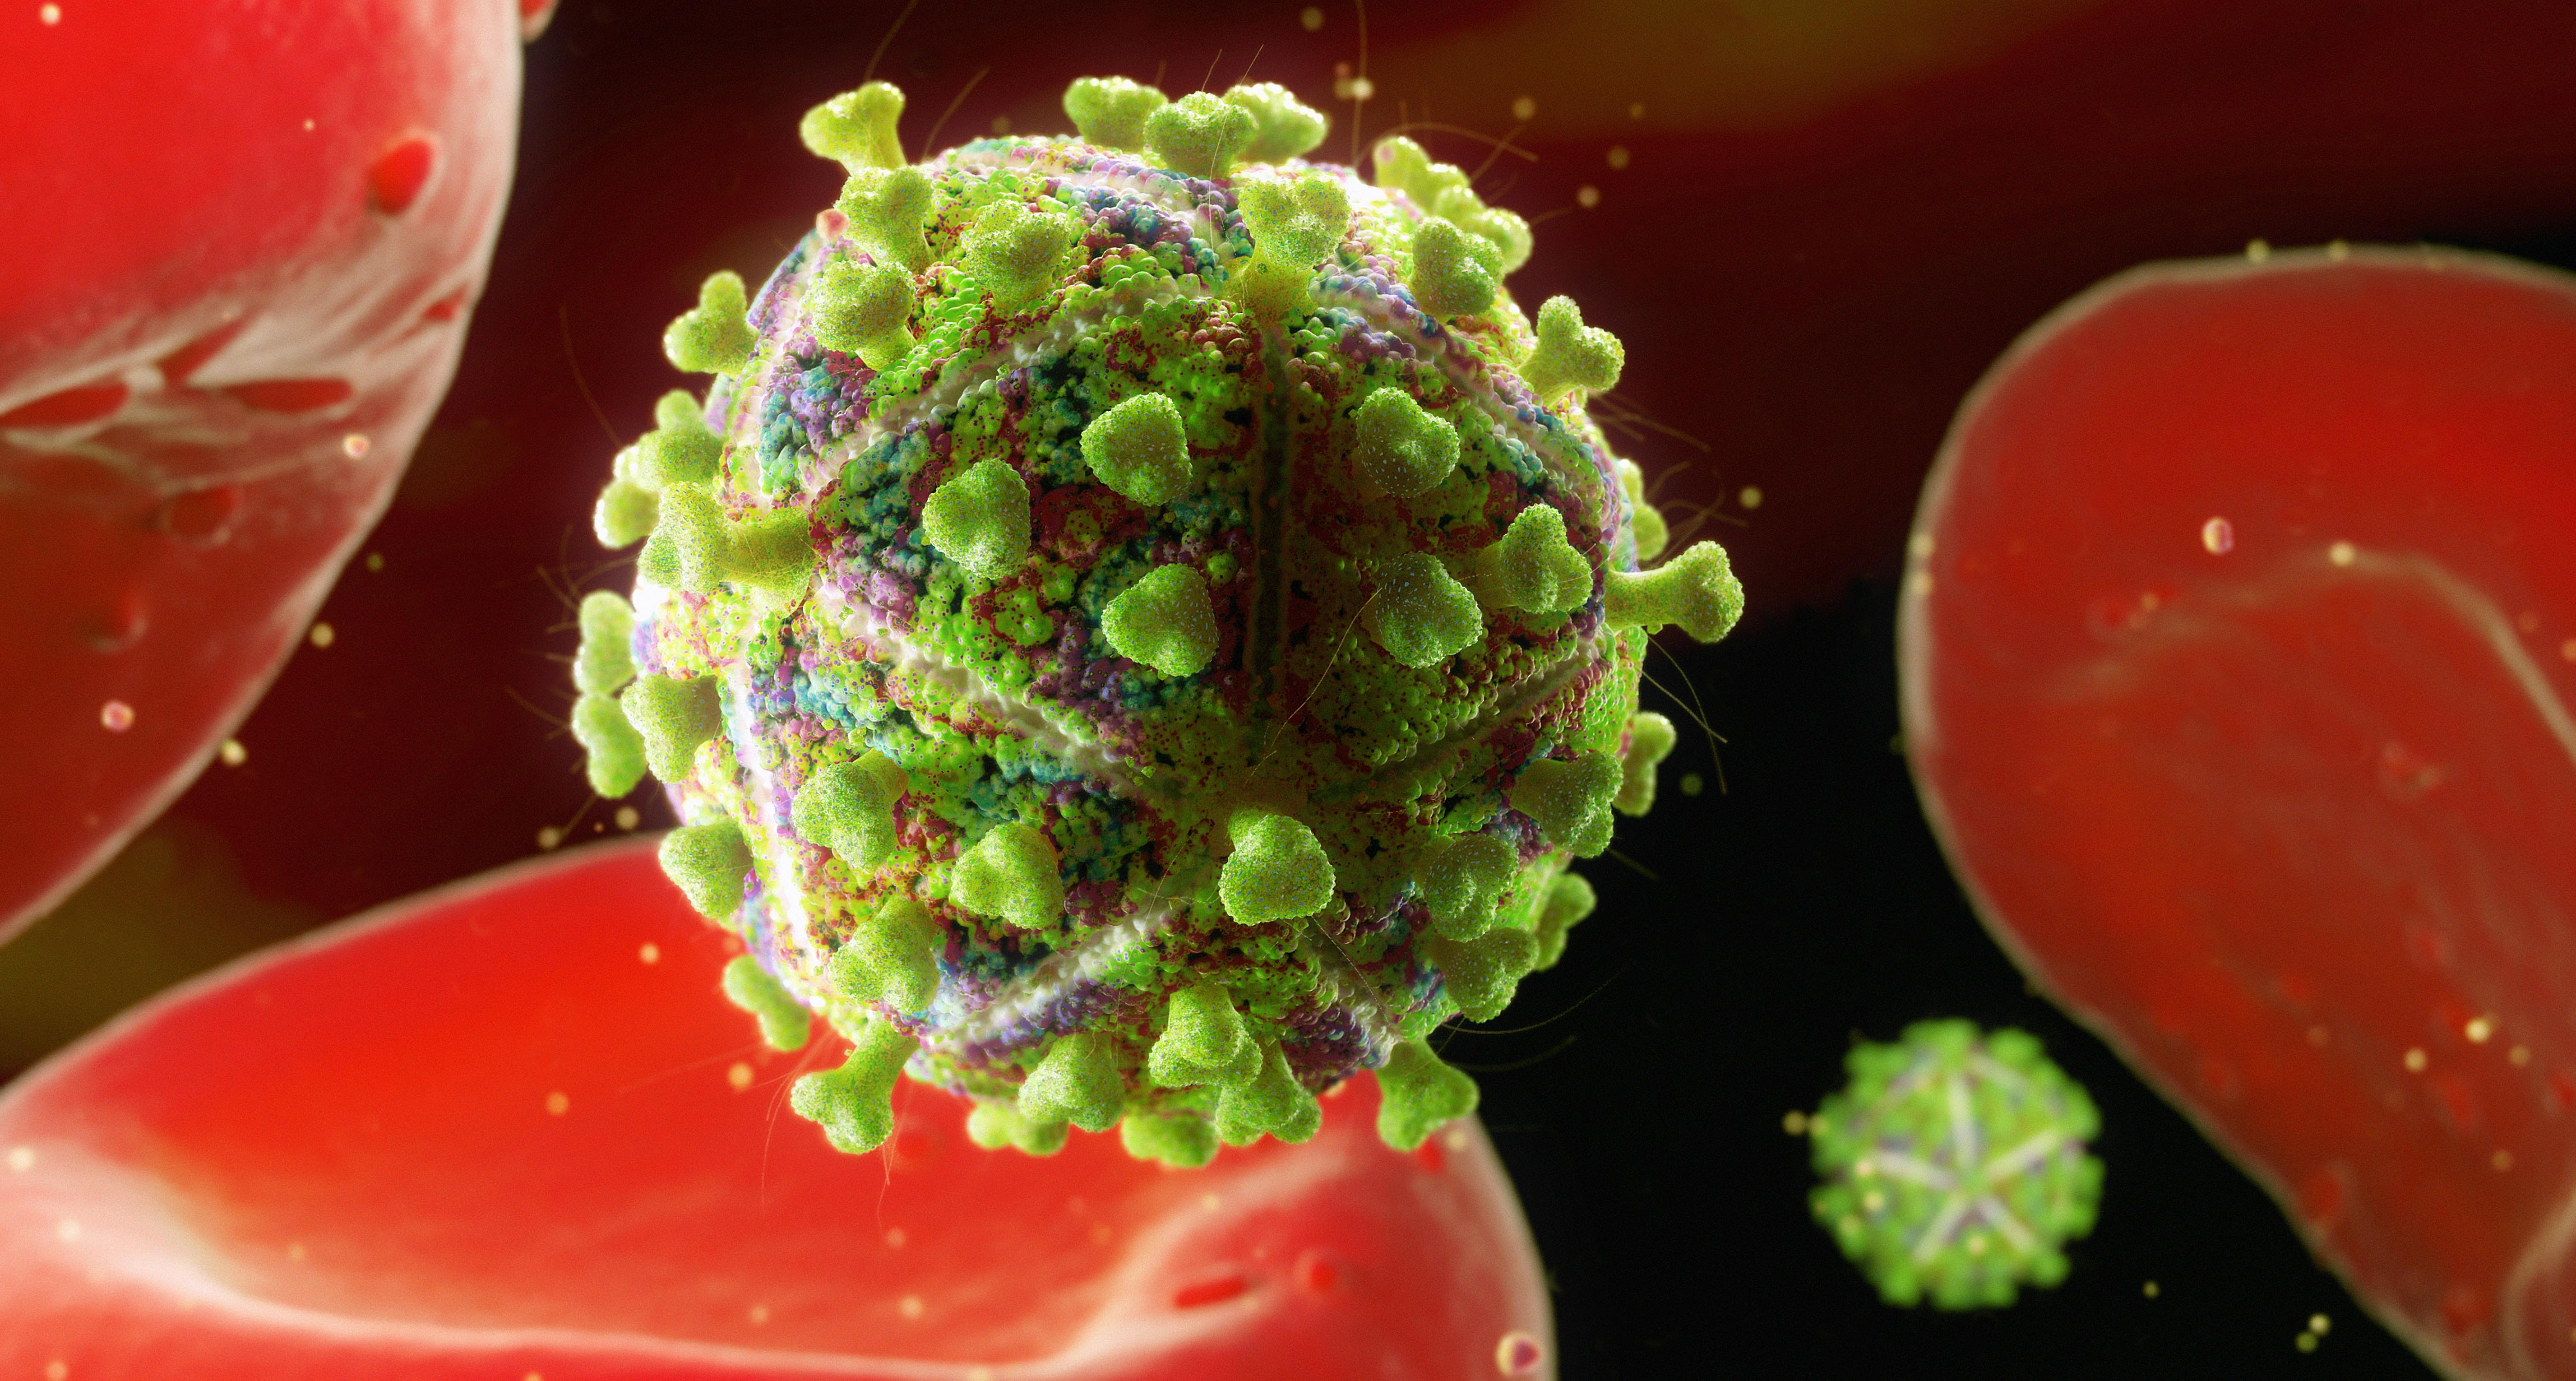 Human immunodeficiency virus. СПИД бактерия. Вирус СПИДА. ВИЧ фото вируса.